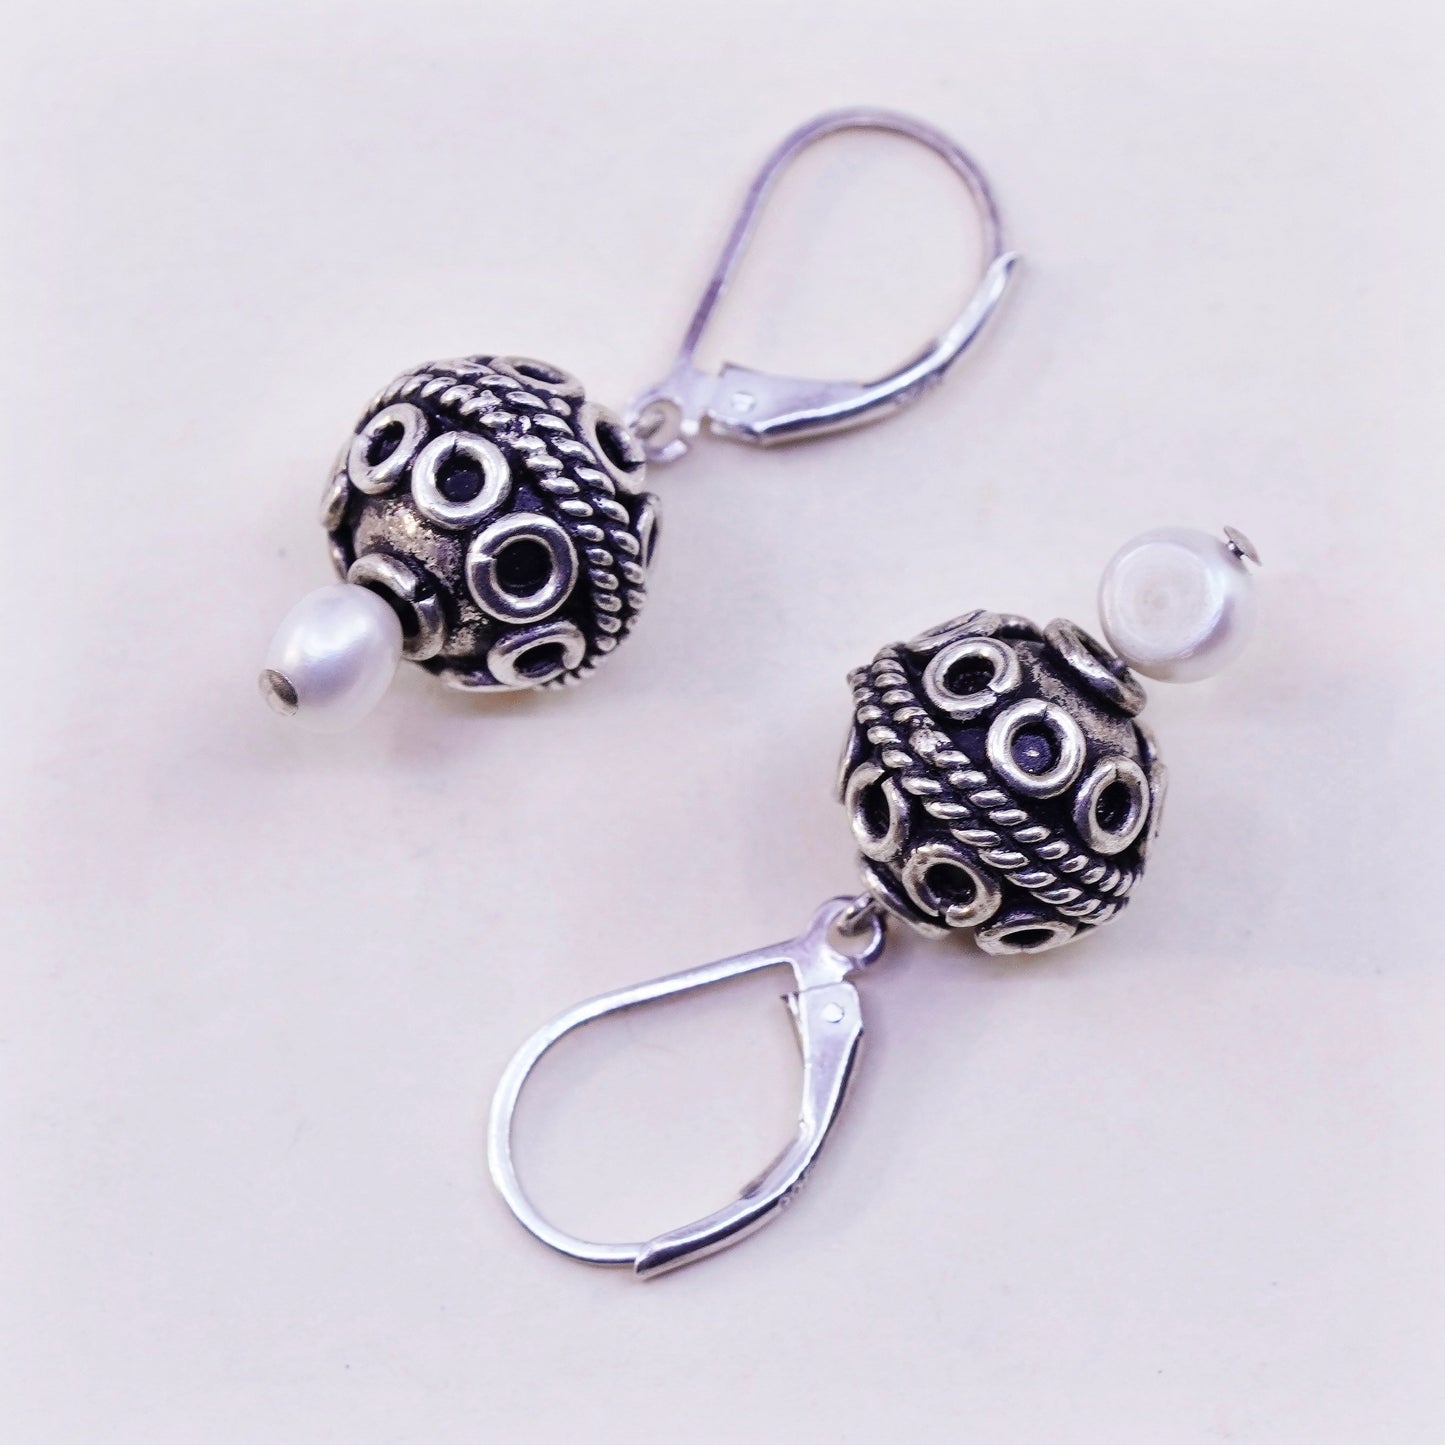 Vintage Sterling silver handmade Bali earrings, 925 swirl bead with pearl